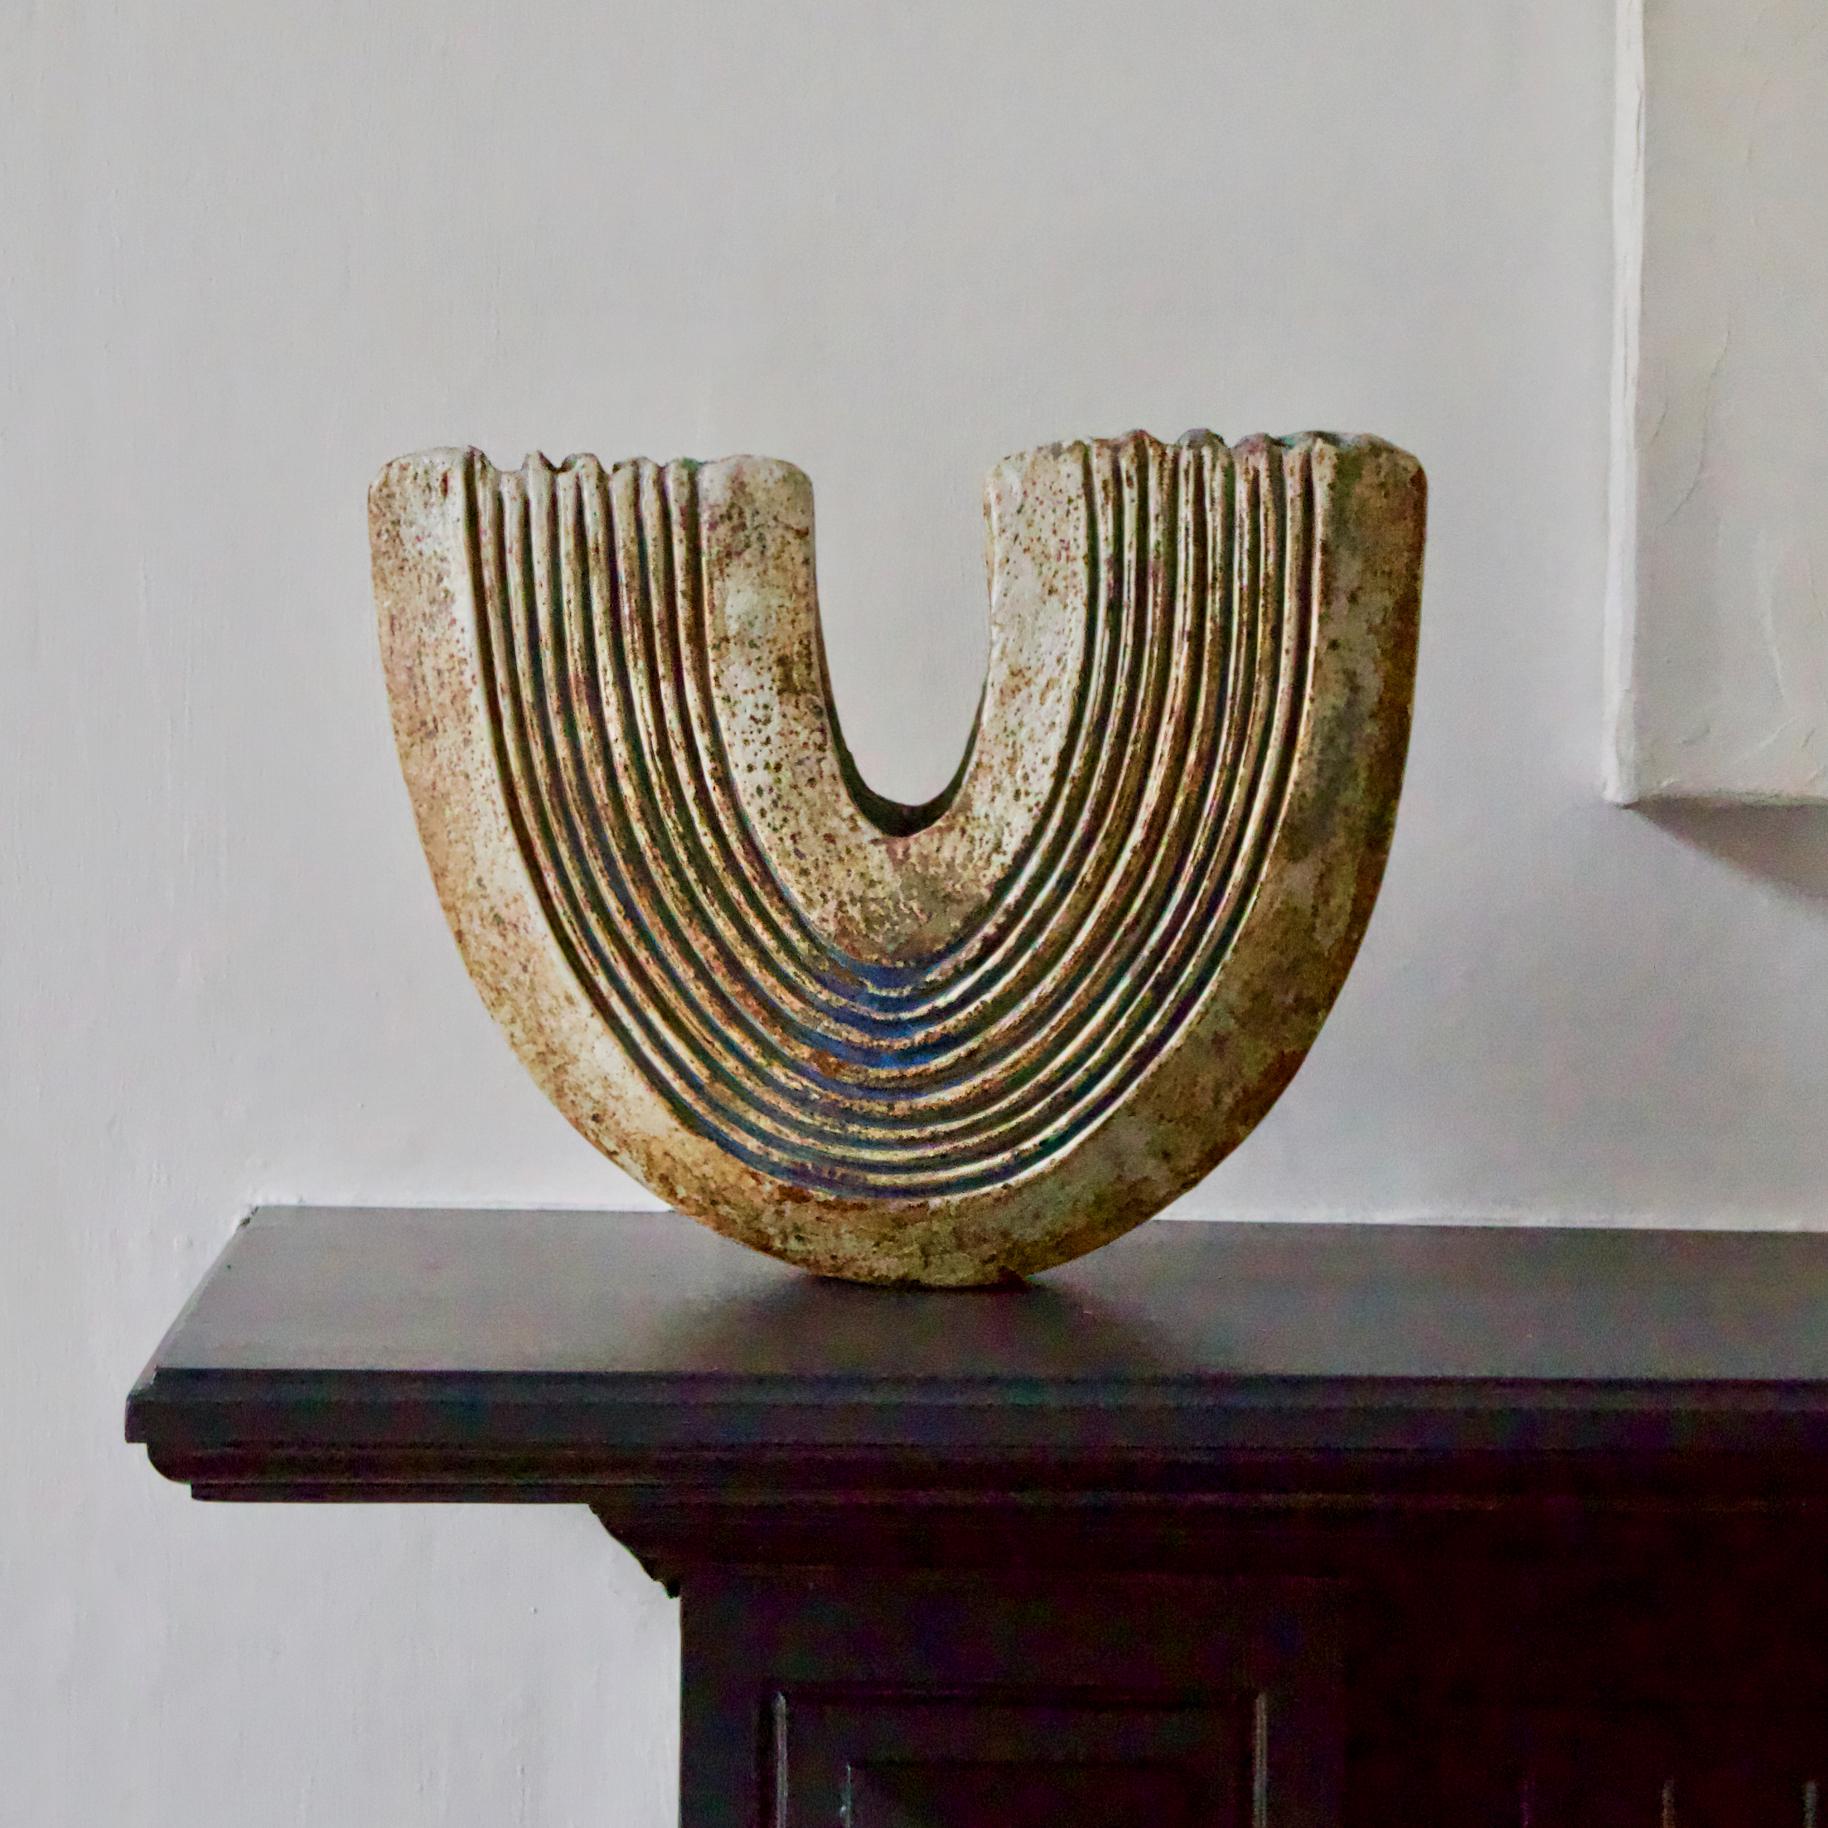 Un grand récipient sculptural en céramique du potier britannique Alan Wallwork (1931 à 2016). 

Le récipient a une forme de croissant rainuré dans des tons bruns neutres, avec une glaçure turquoise à l'intérieur. Il est en très bon état vintage avec